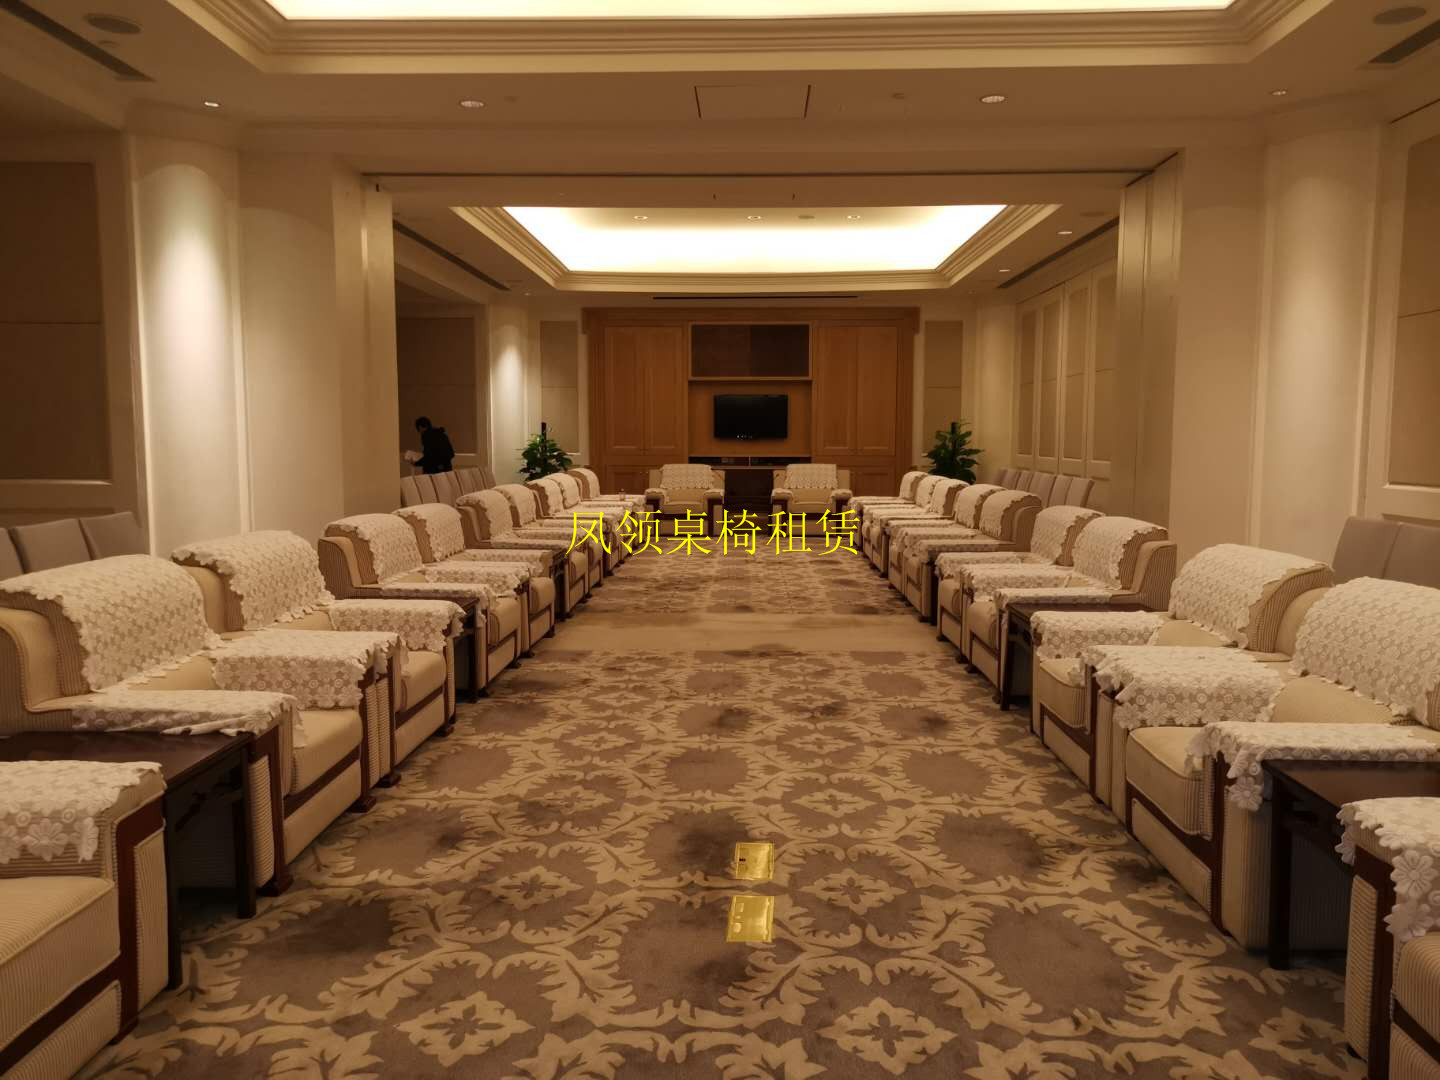 深圳高端沙发租赁贵宾沙发租赁沙发茶几出租桌子椅子租赁